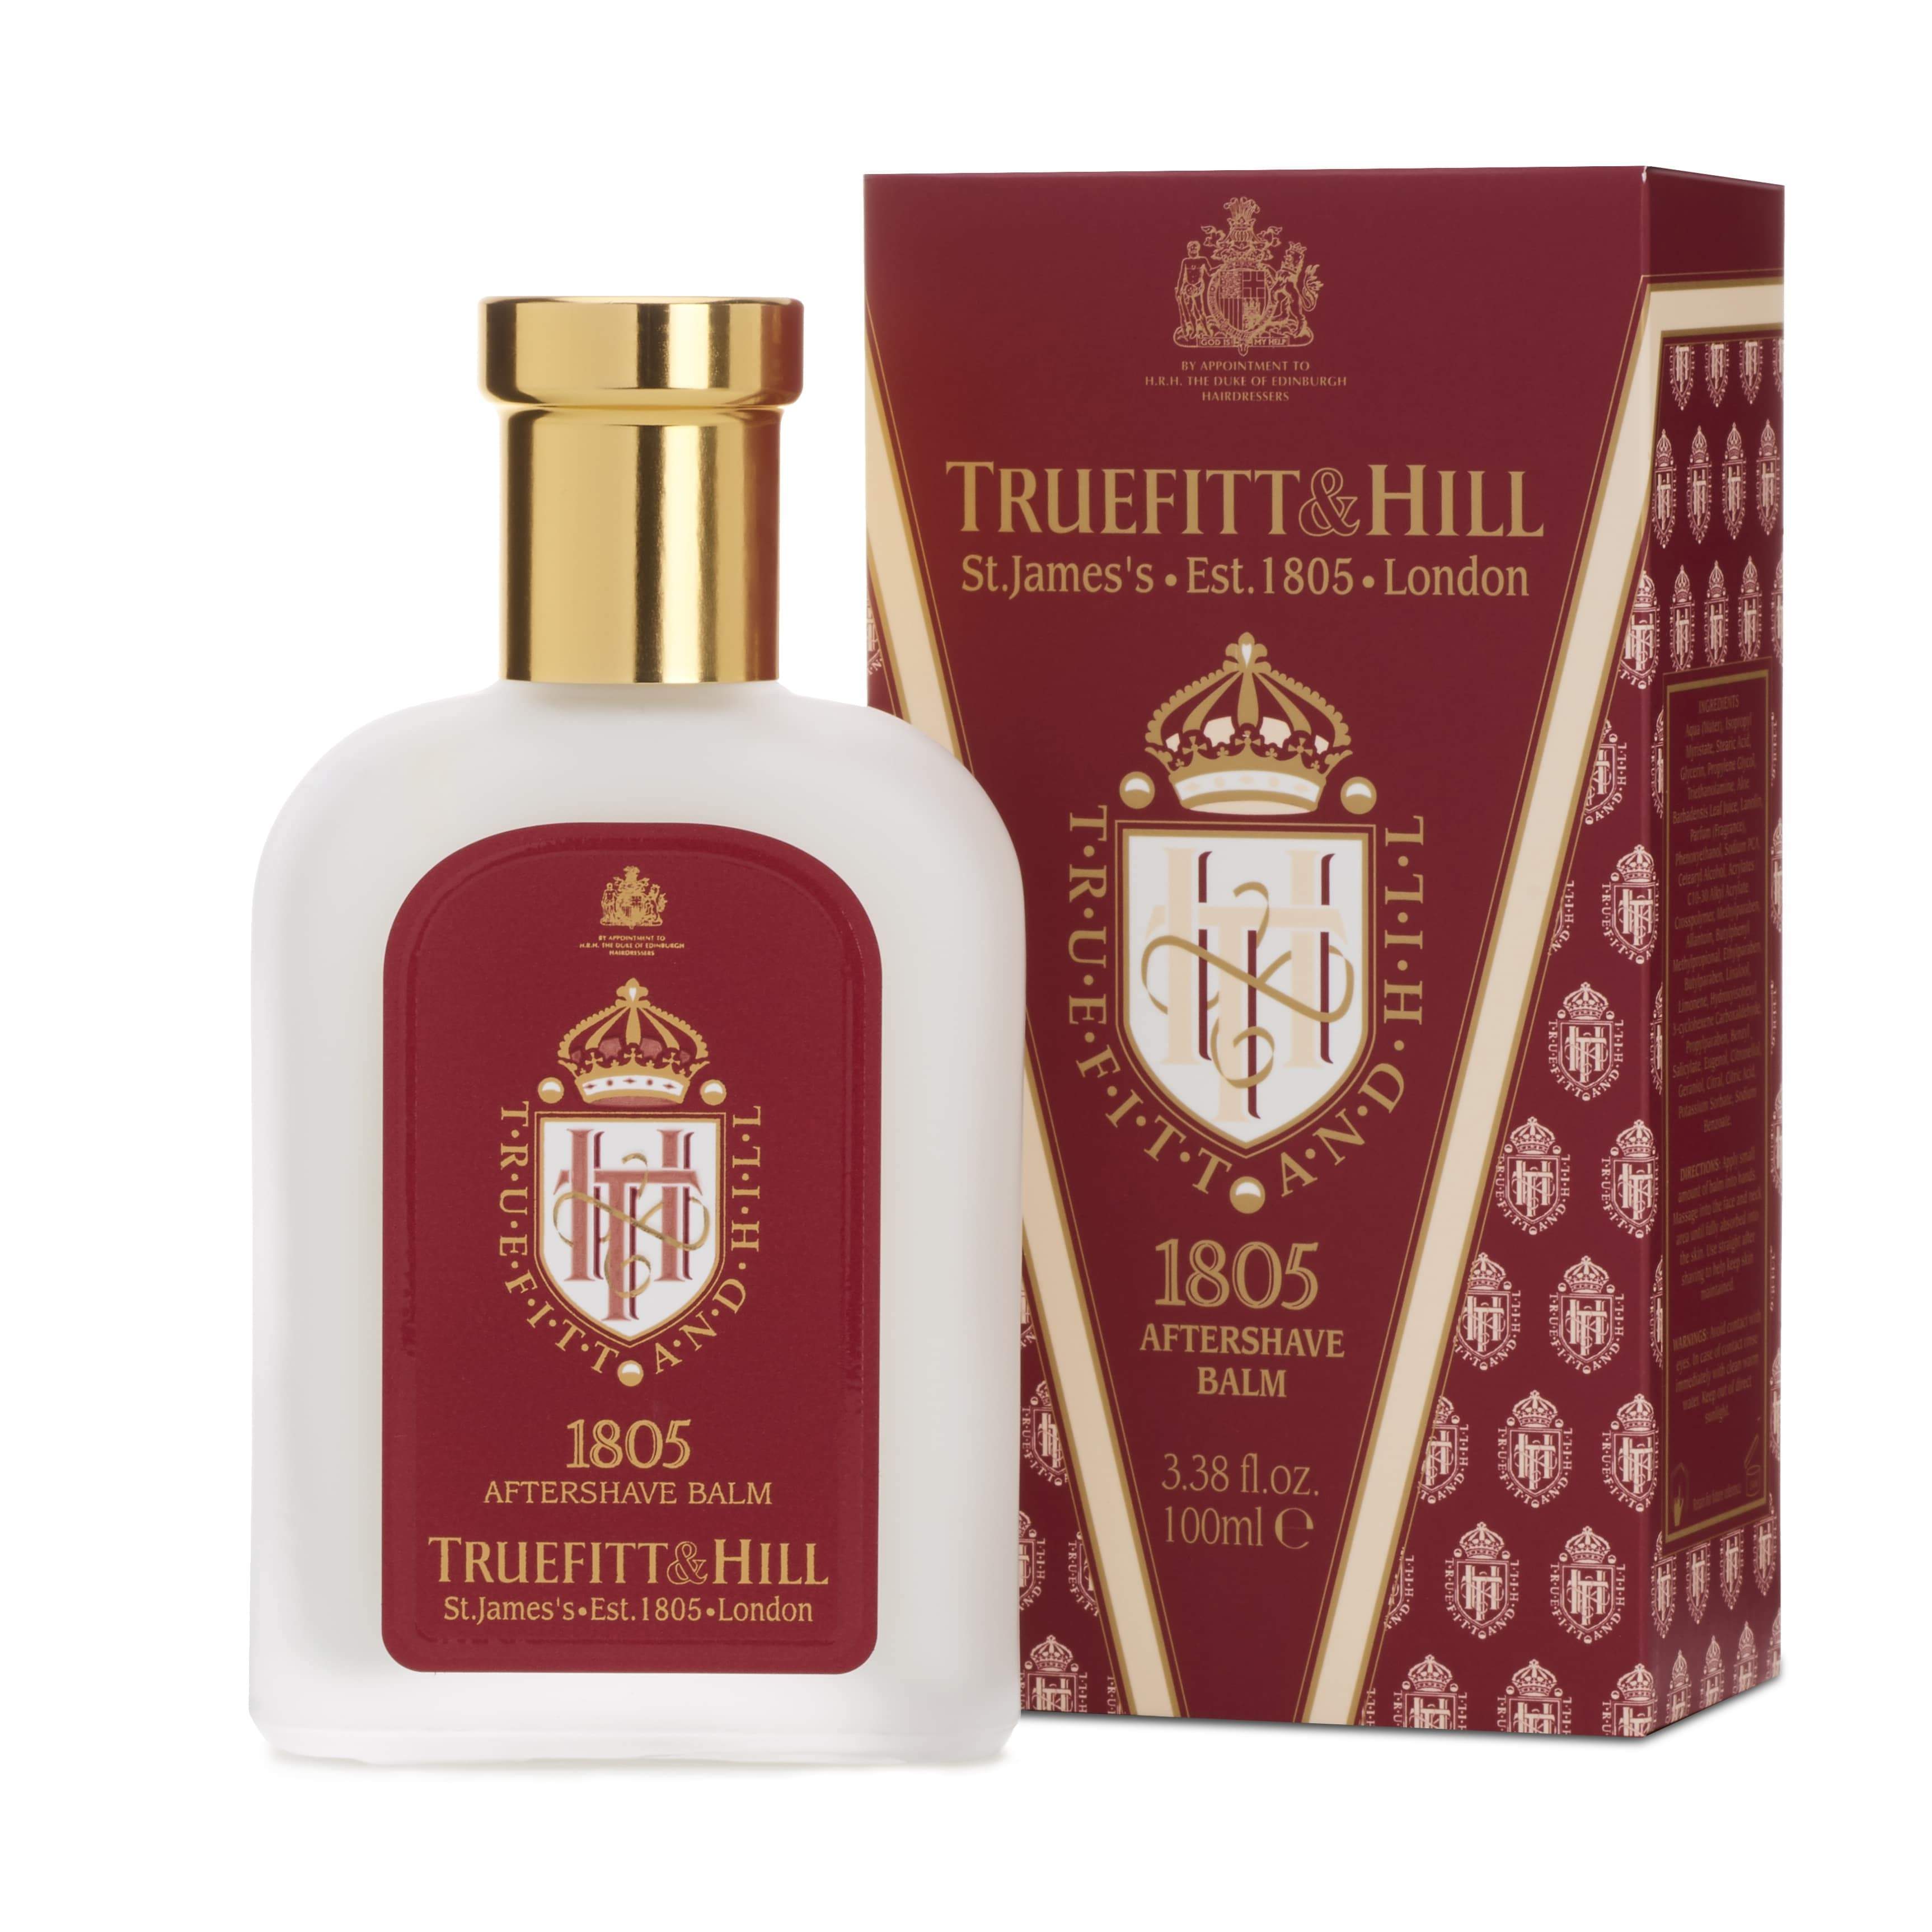 Truefitt & Hill Aftershave Balm 1805